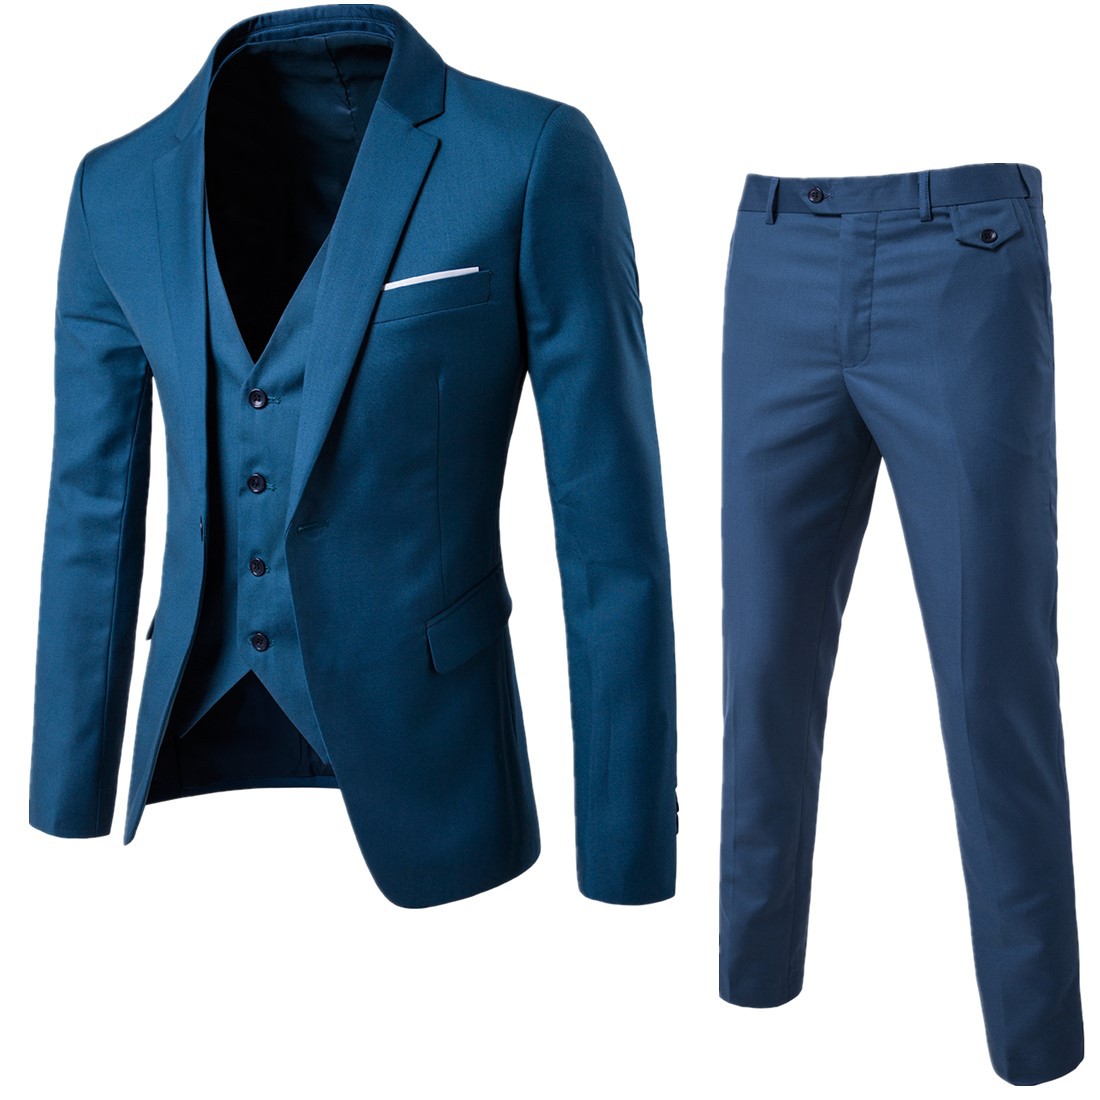 Plus size suit men's suit slim Korean British bridegroom's three piece suit casual business dress